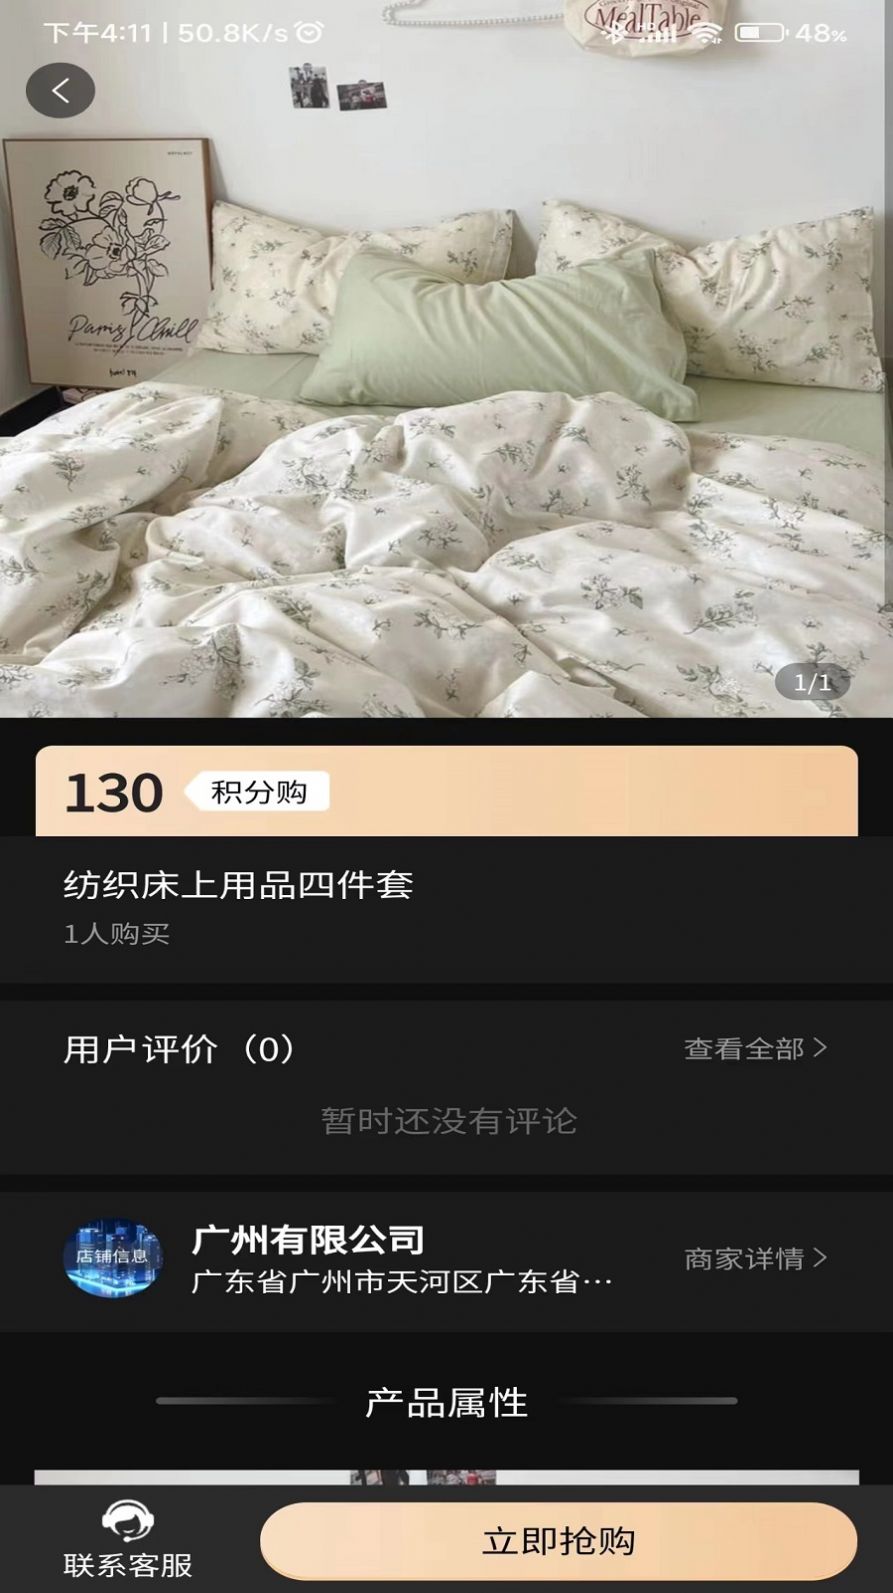 同欣会商城下载安卓版app图片2